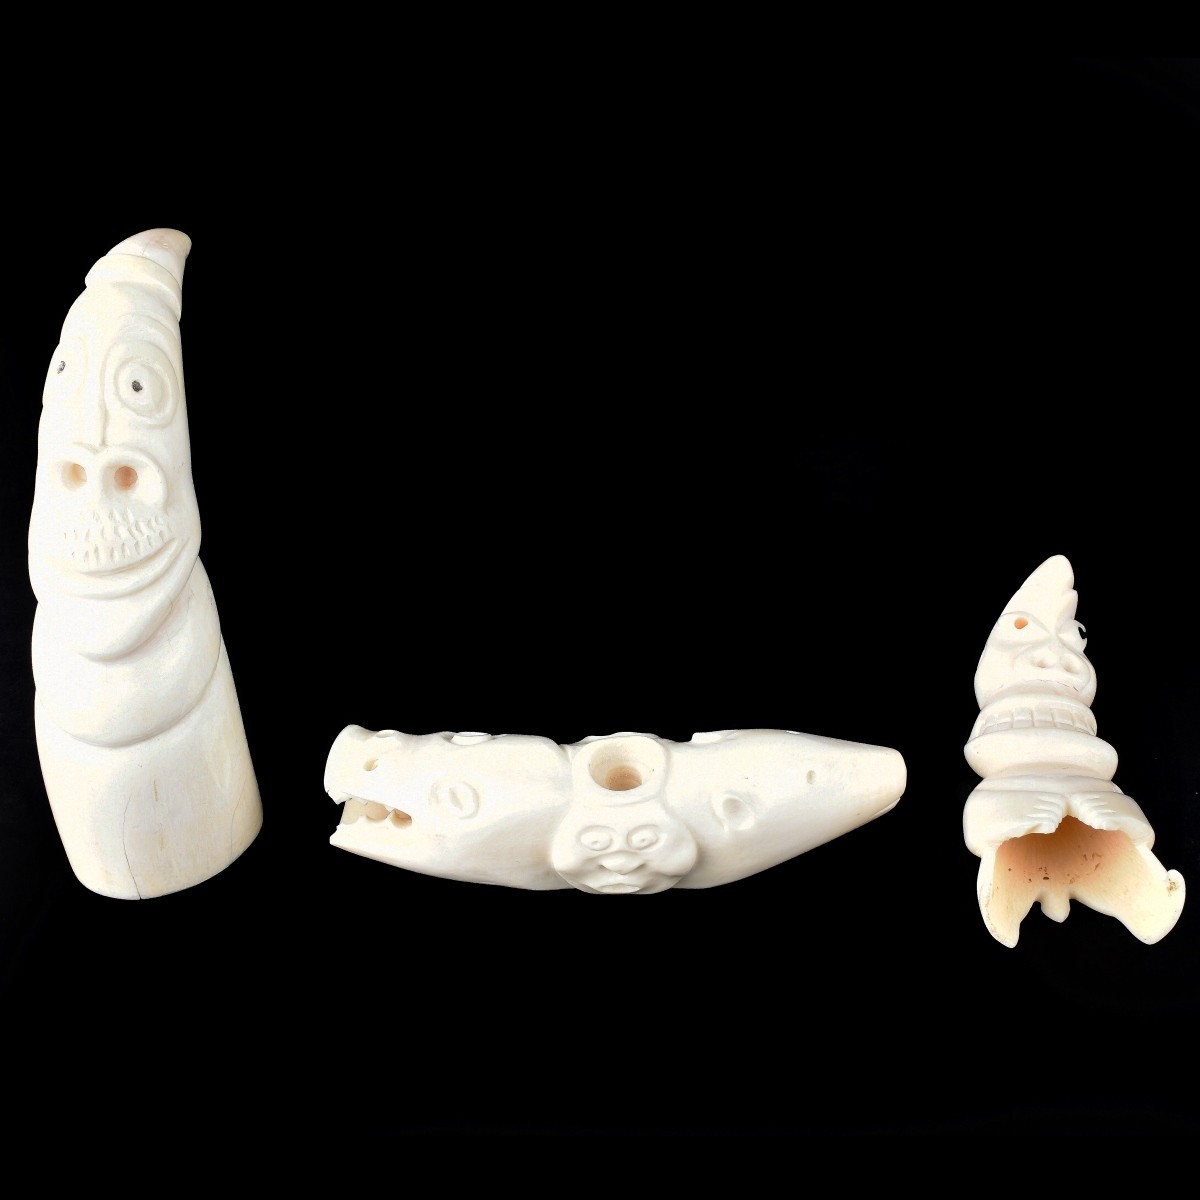 3 Inuit Carved Walrus Tupilak Figurines